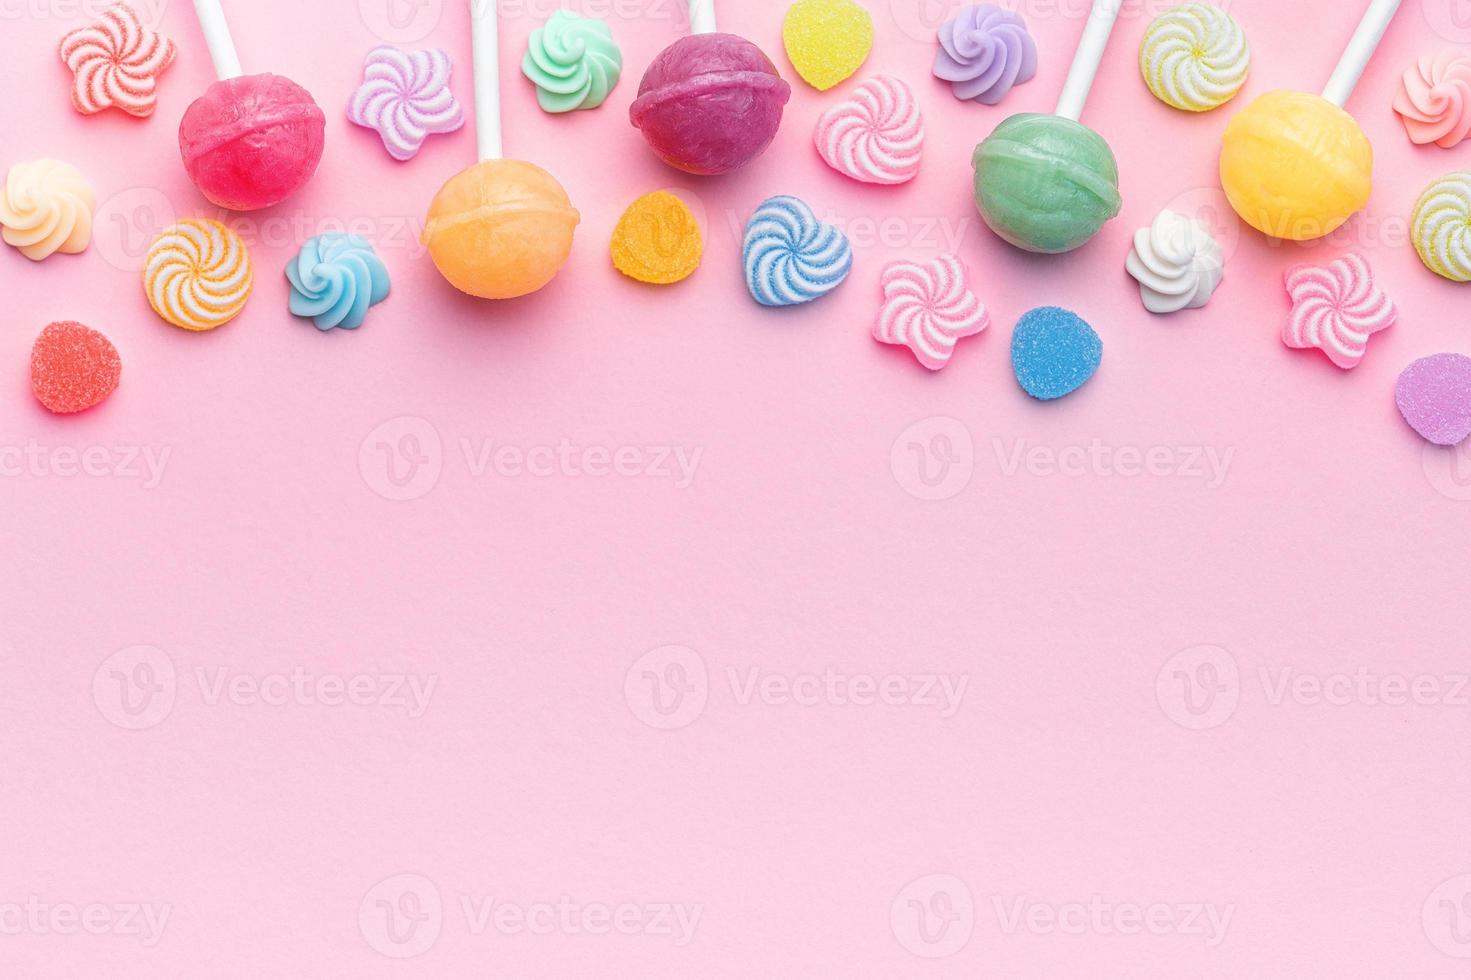 ljuv klubbor och godis på rosa bakgrund foto